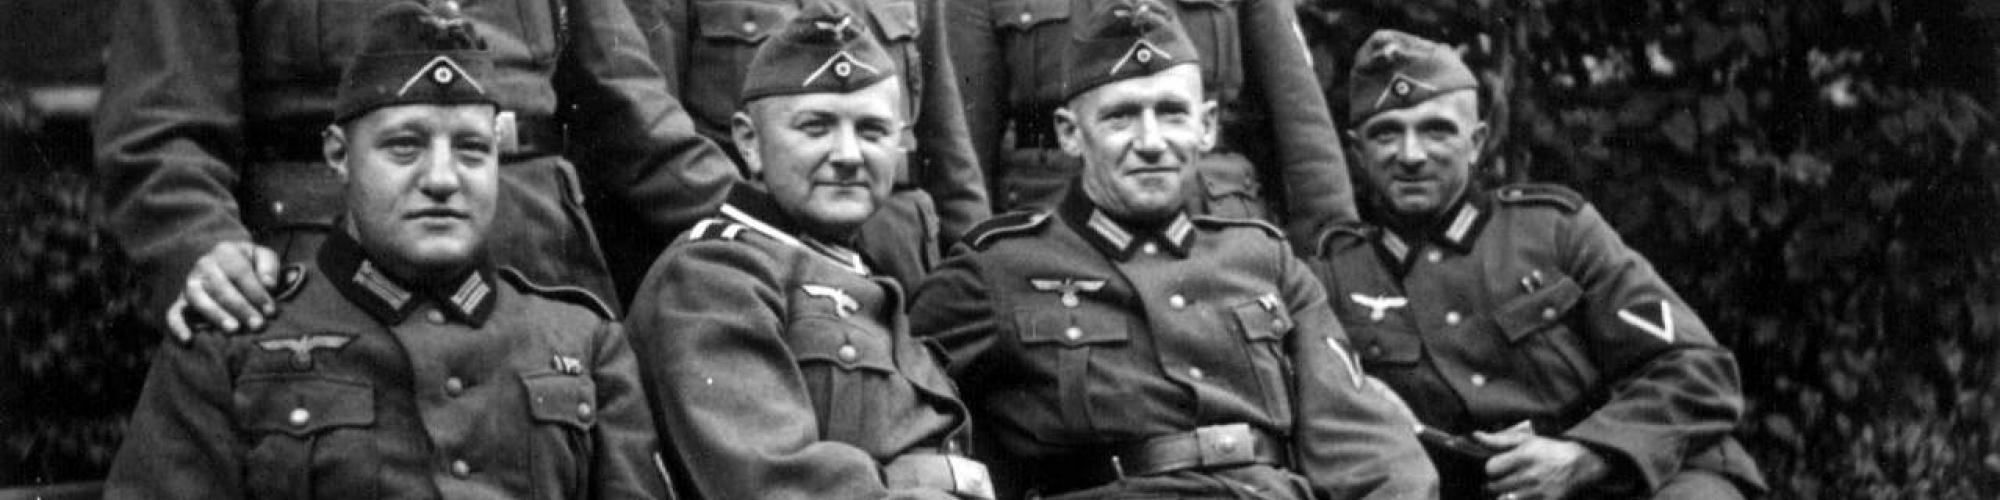 soldats allemands Seconde Guerre mondiale 